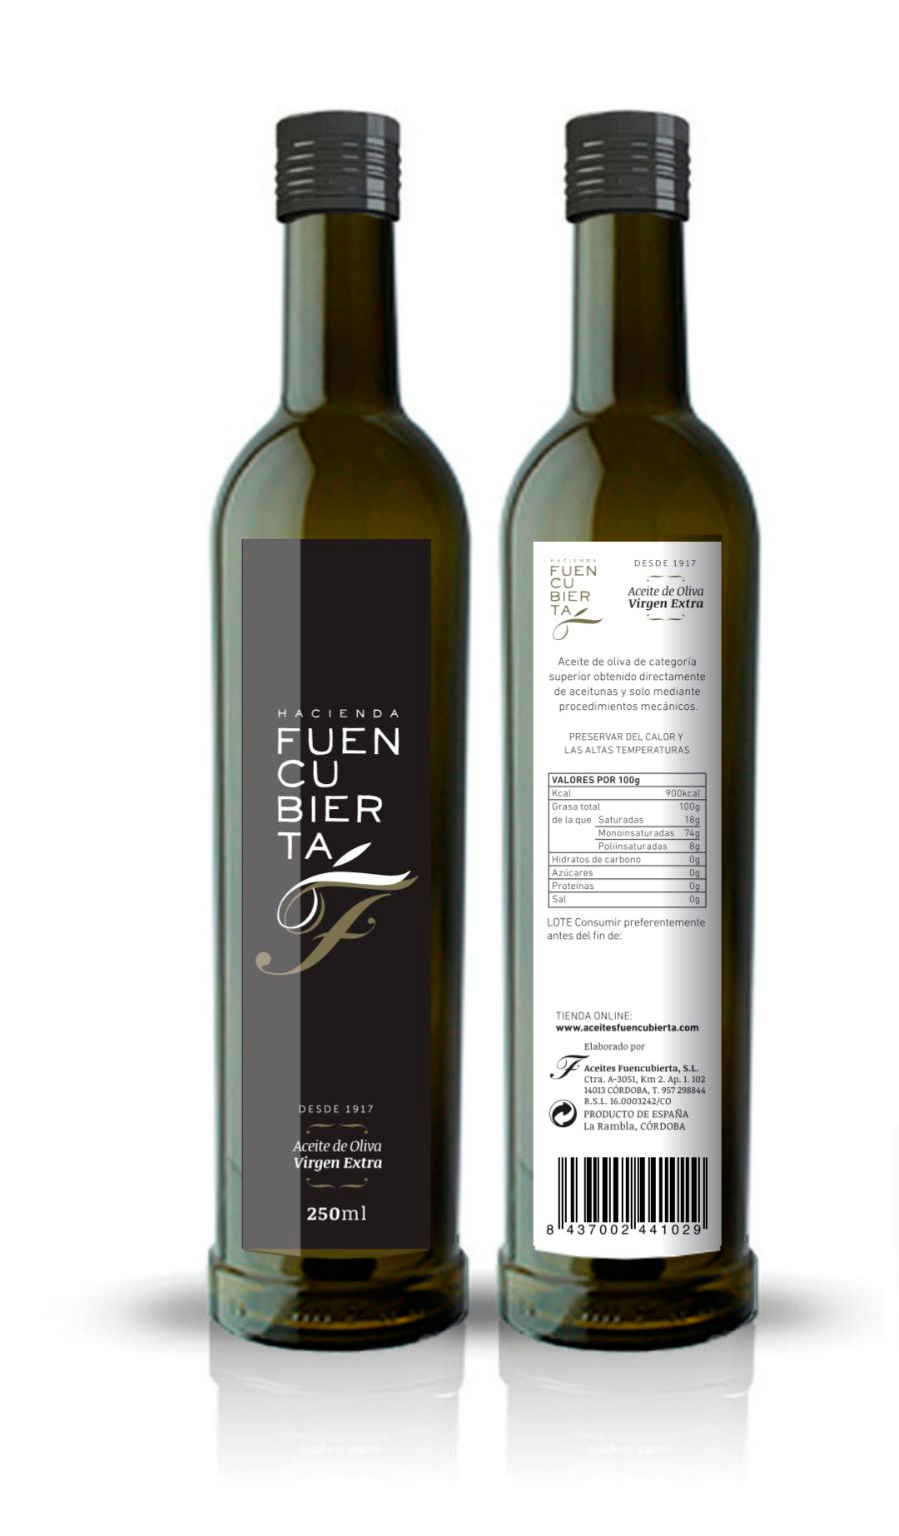 Hacienda Fuencubierta-Aceite de oliva Virgen Extra 250 ml